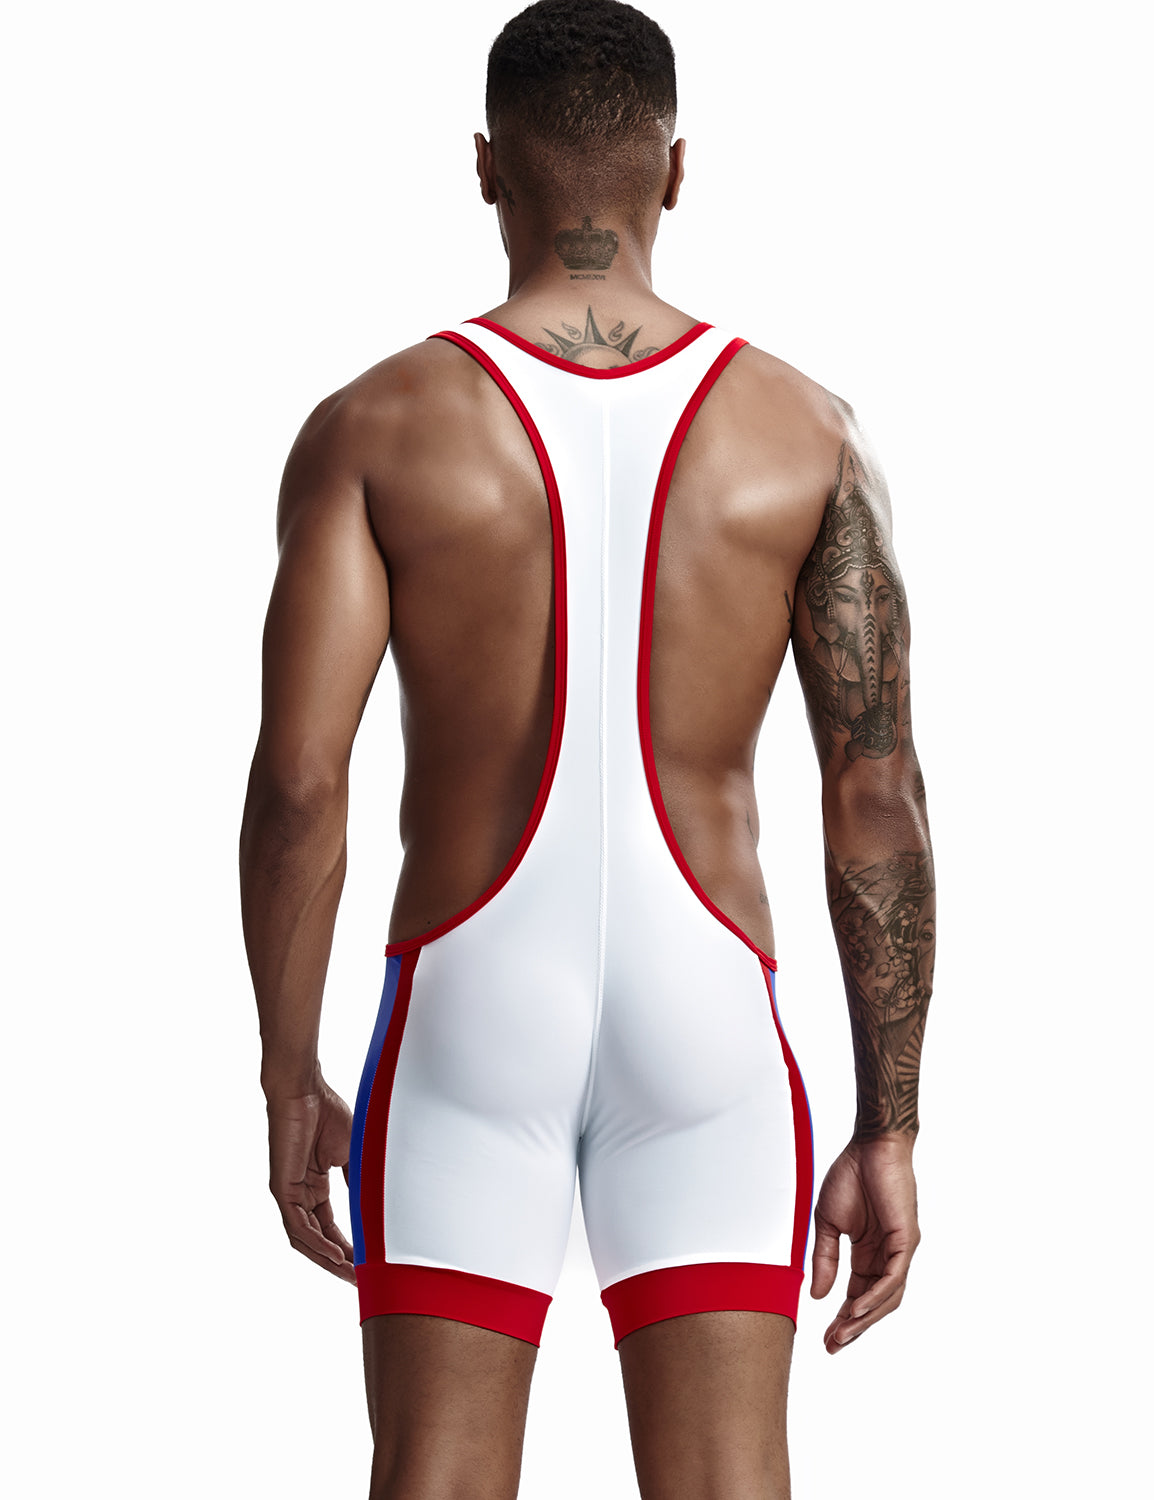 TAUWELL Mens Sexy Fitness Wrestling Leotard Singlet Bodysuit 9701 – SEOBEAN®